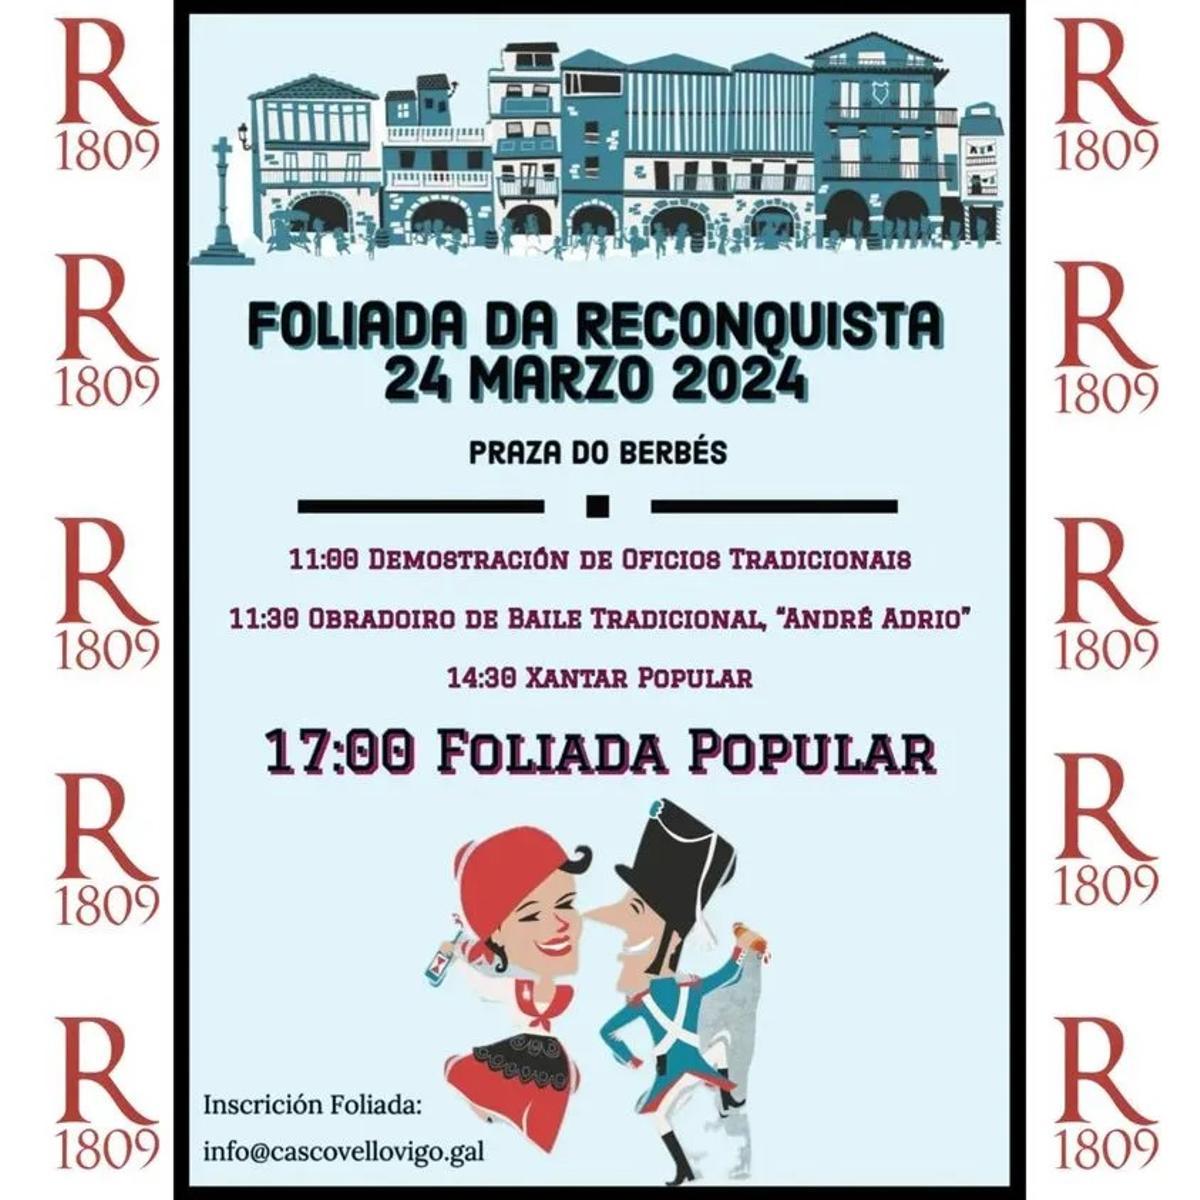 Programa de la Fiesta de la Reconquista de Vigo 2024 para el domingo 24 de marzo.